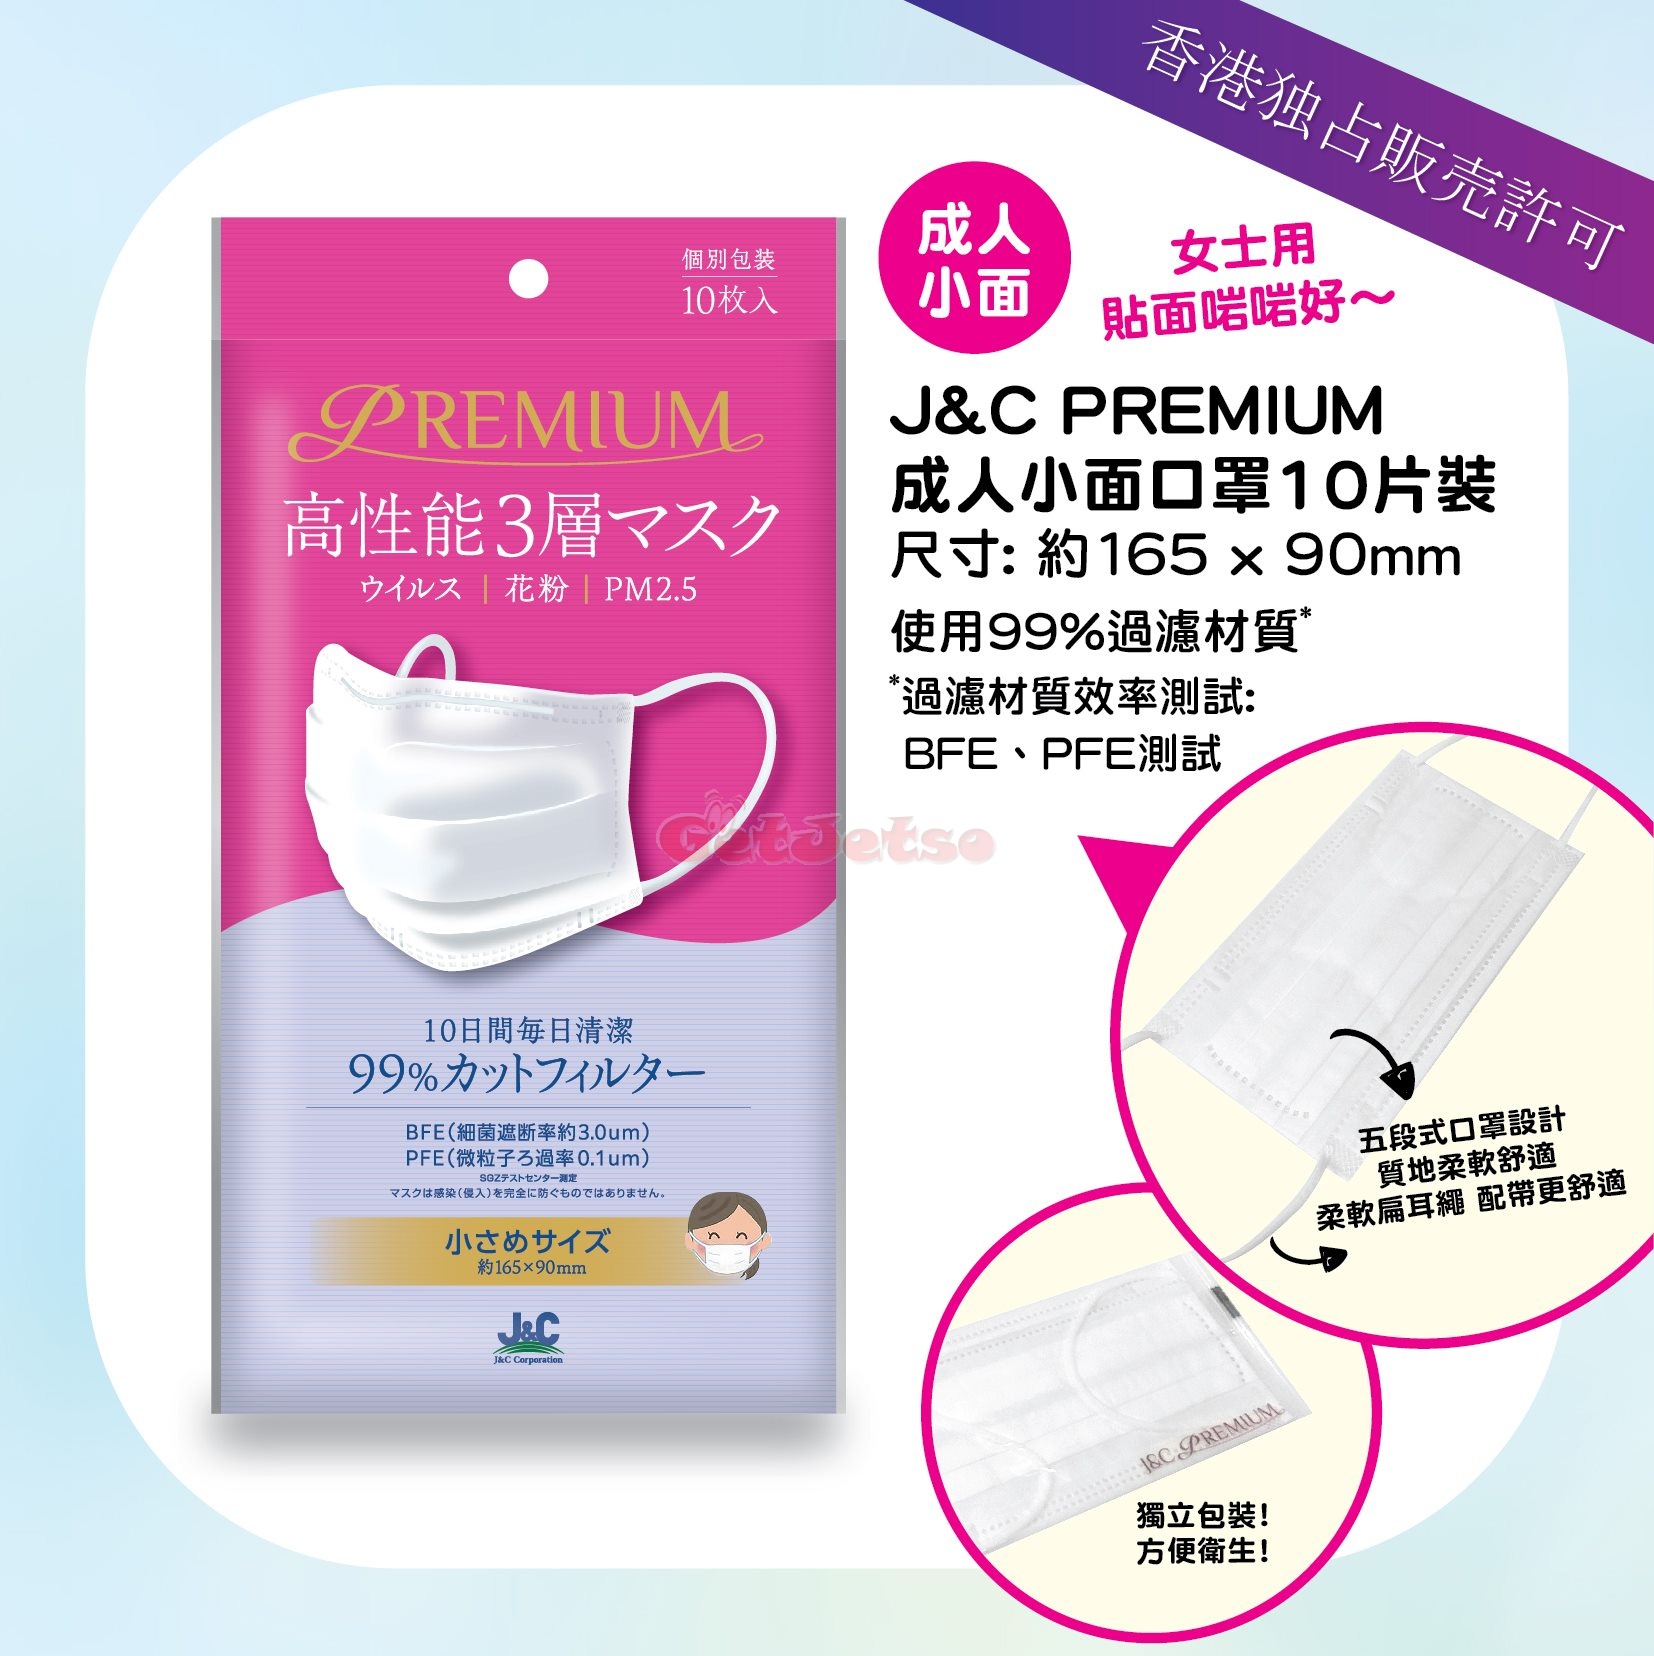 日本城8月14日發售J&C PREMIUM三層口罩圖片3